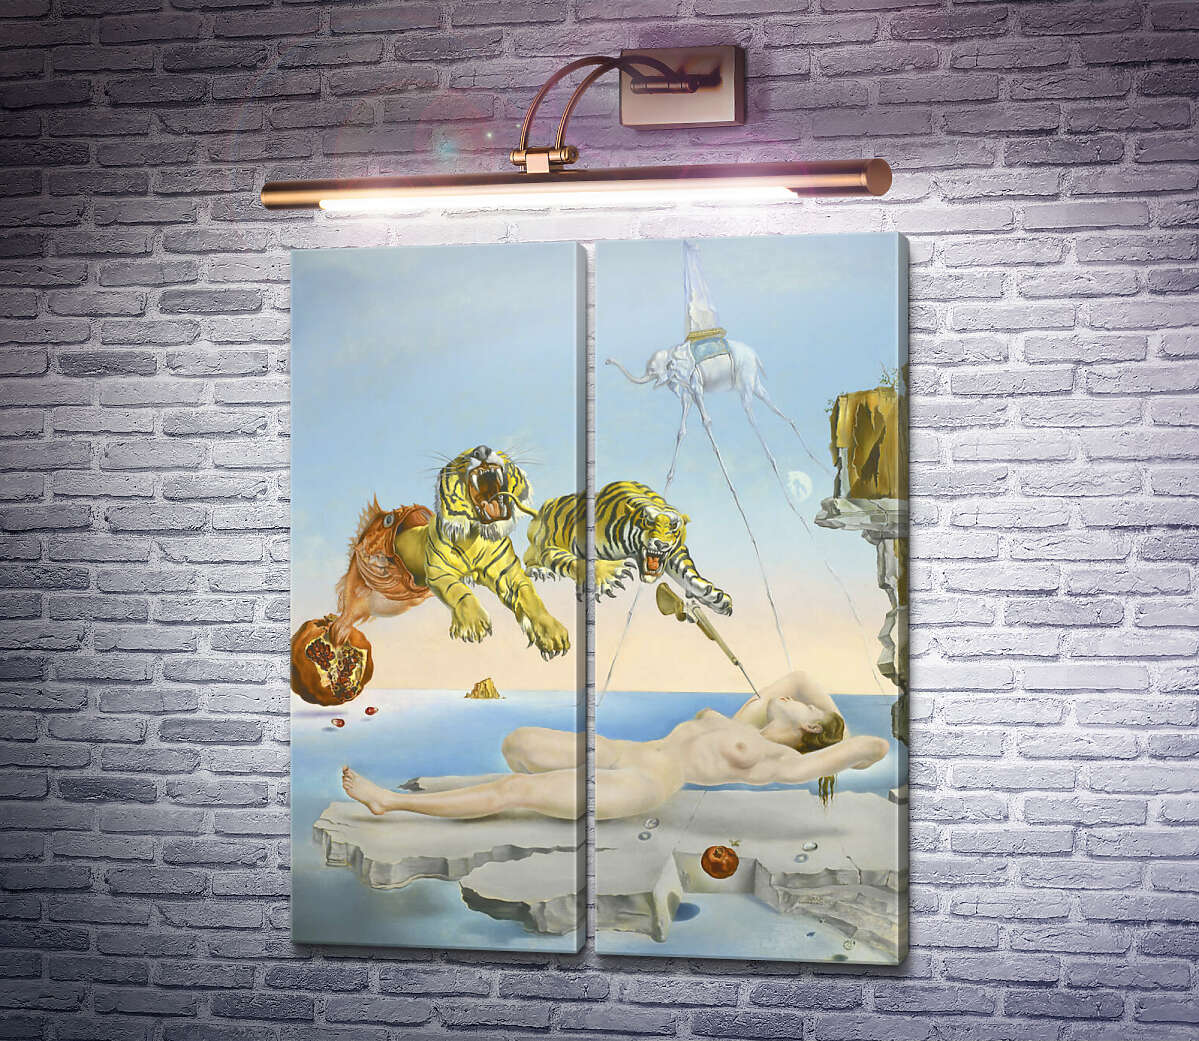 Модульна картина Сон, викликаний польотом бджоли навколо граната за секунду до пробудження Сальвадор Далі